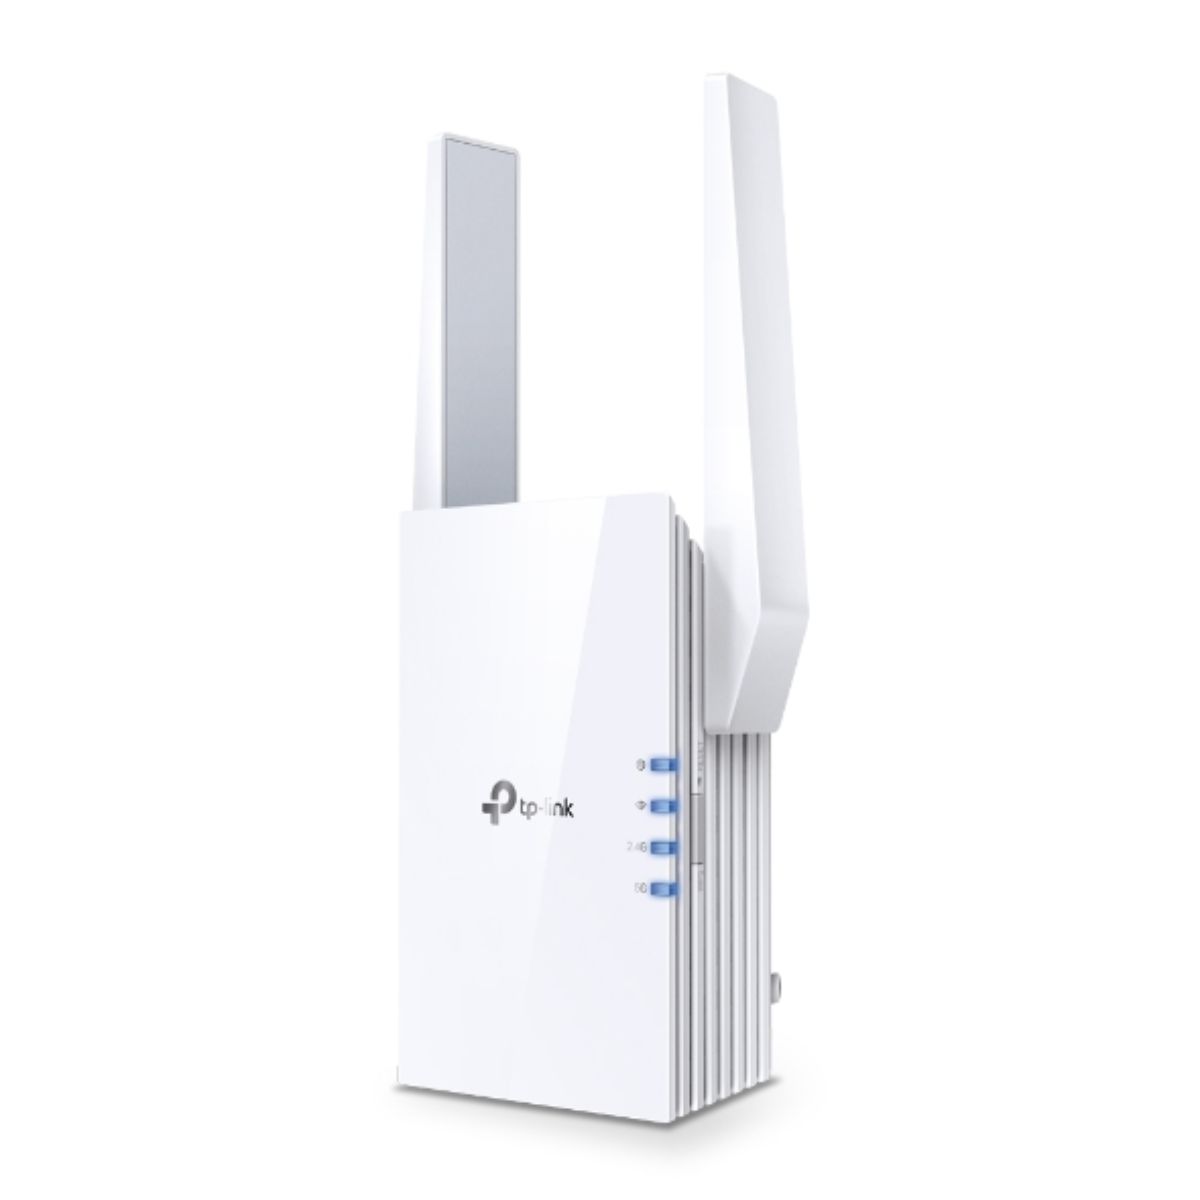 Bộ mở rộng sóng wifi TP-Link RE705X tốc độ 574 Mbps trên 2.4 GHz, 2402 Mbps trên băng tần 5 GHz